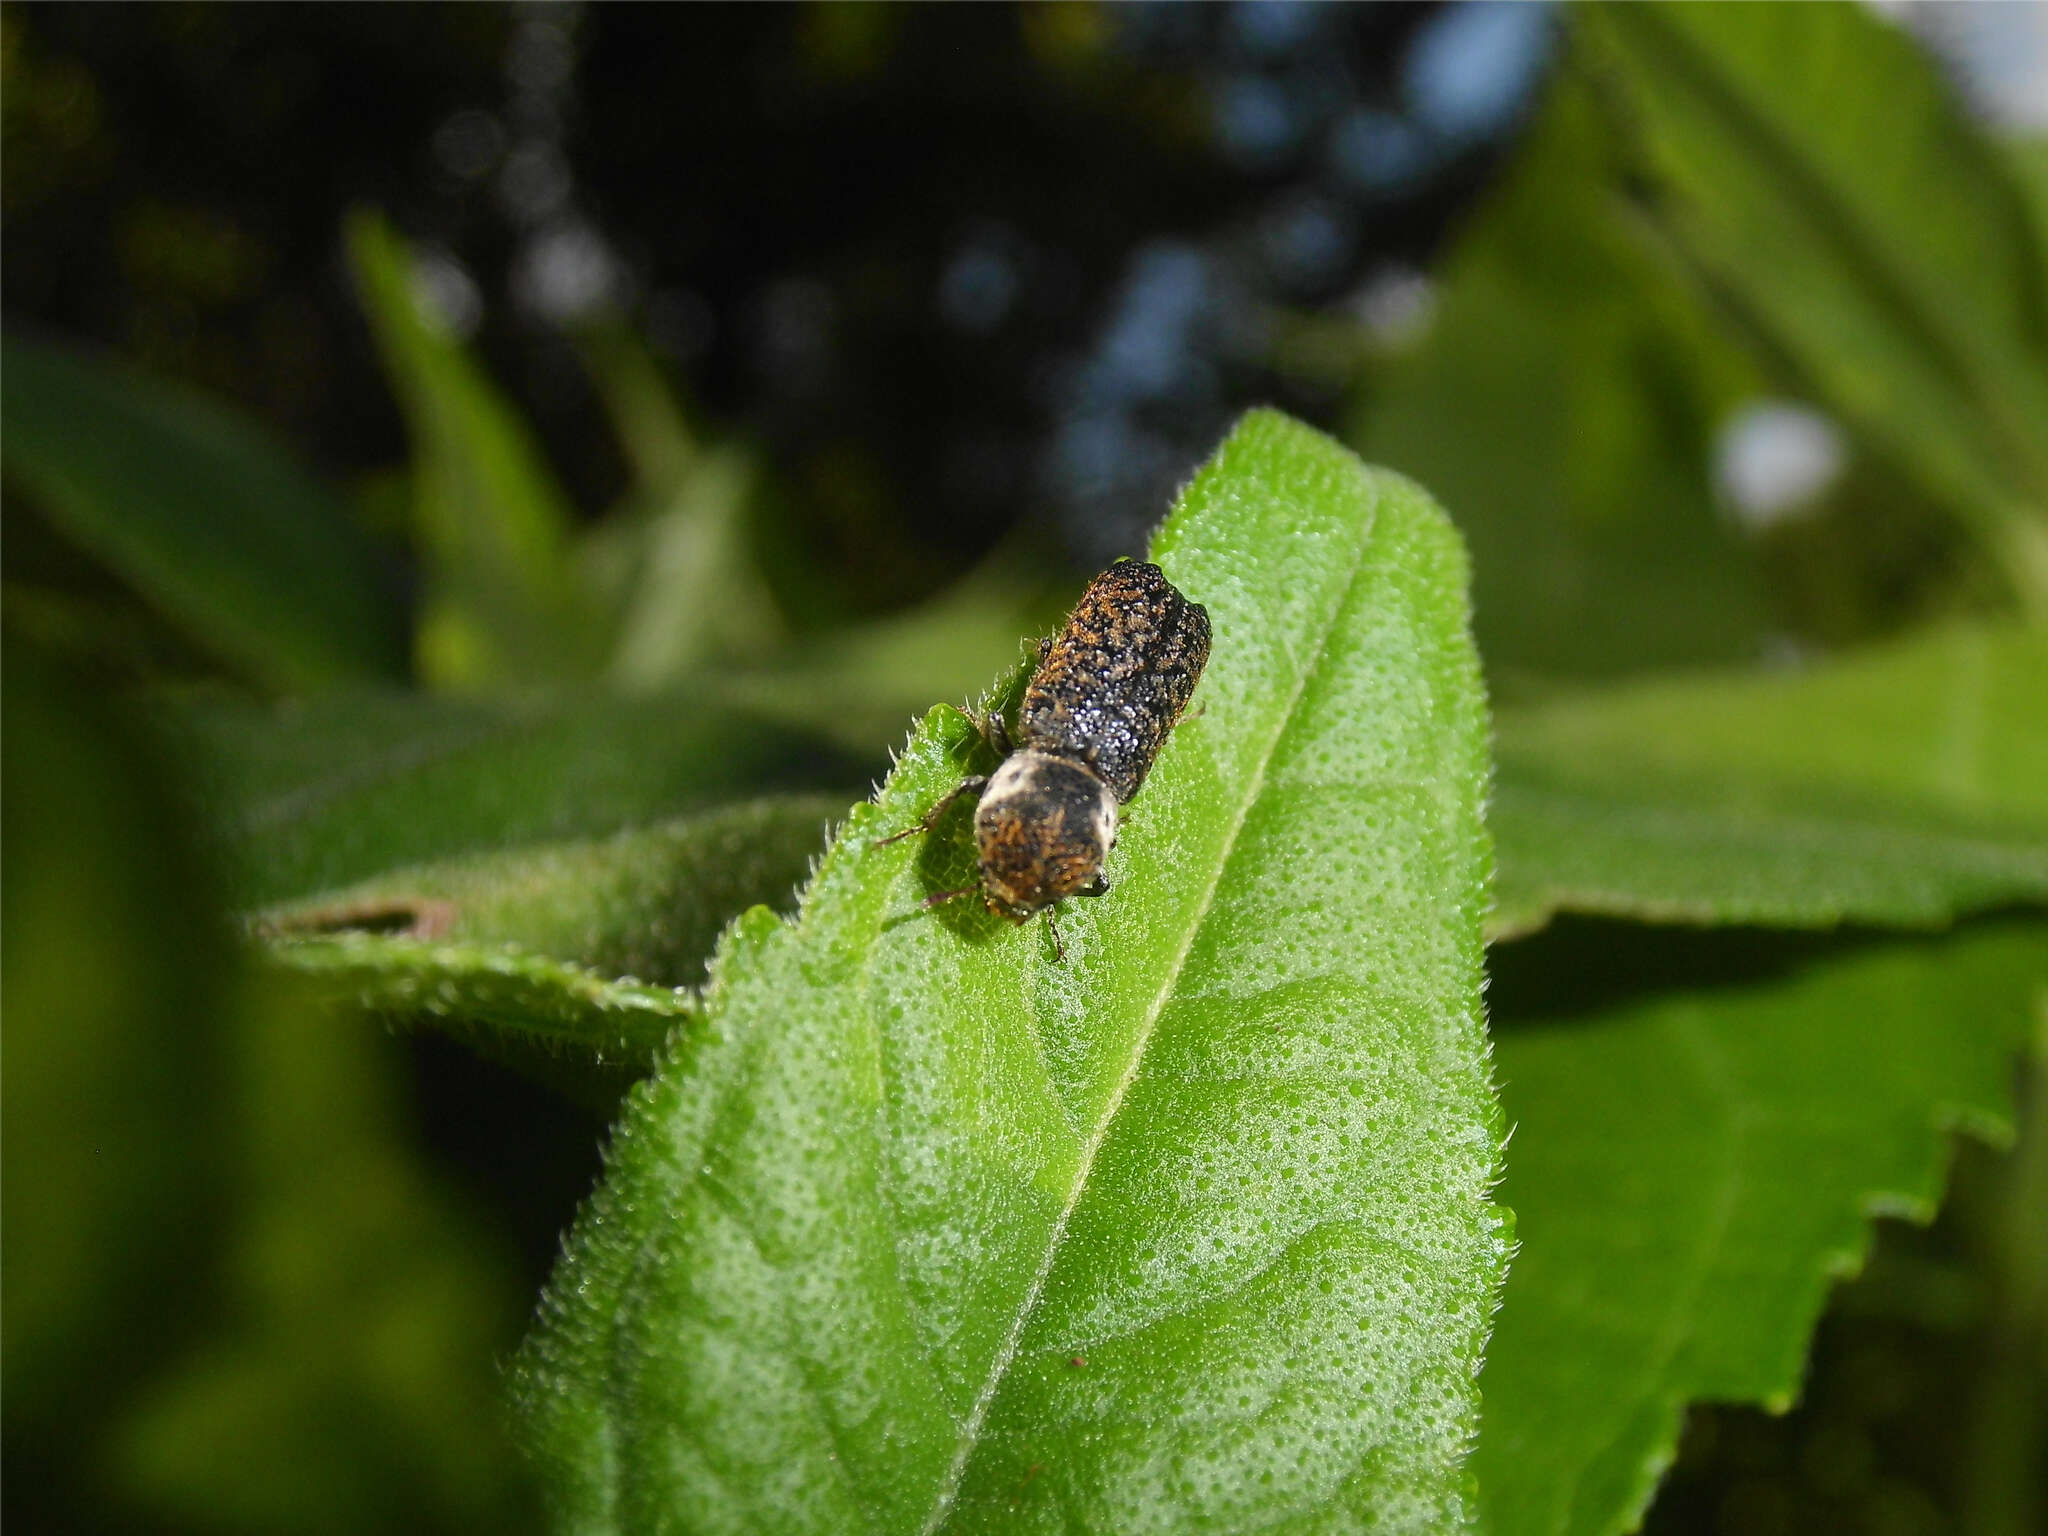 Image of Grape Cane Borer Beetle